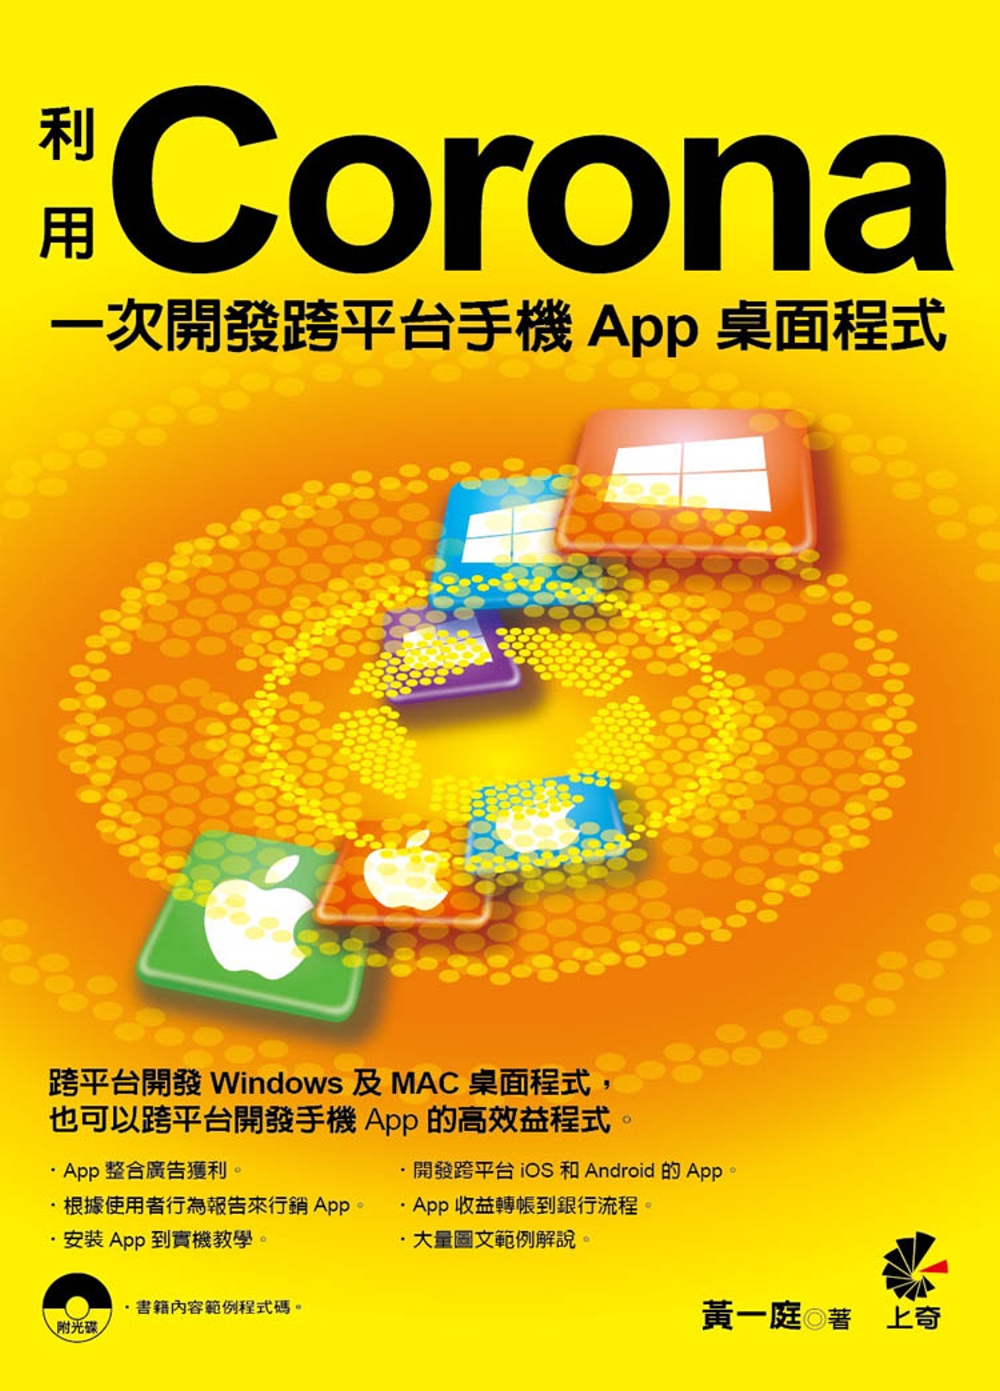 利用Corona一次開發跨平台手機App桌面程式